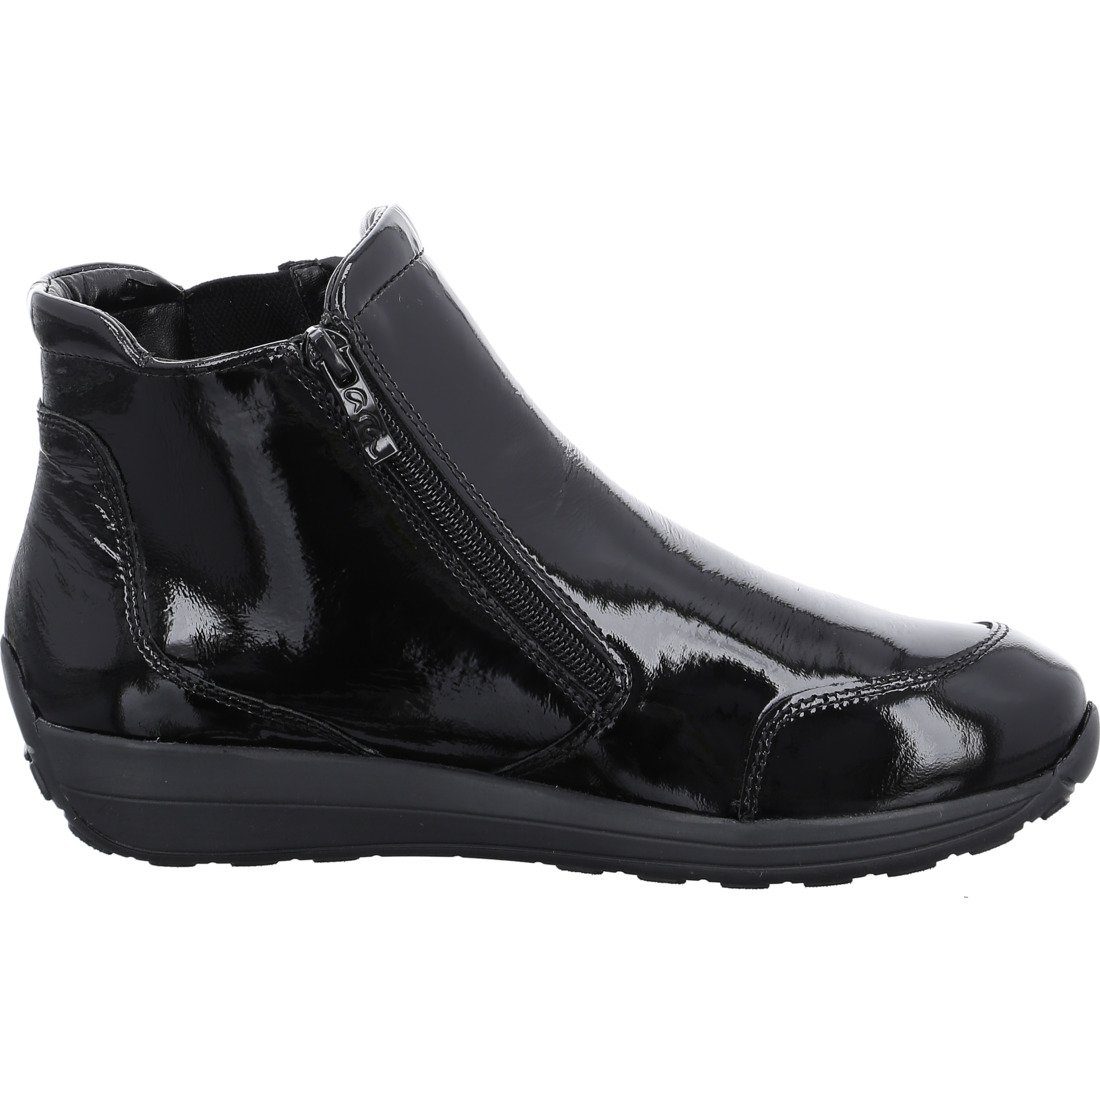 Lackleder Stiefelette 043836 Schuhe, Merano schwarz Stiefelette - Ara Ara